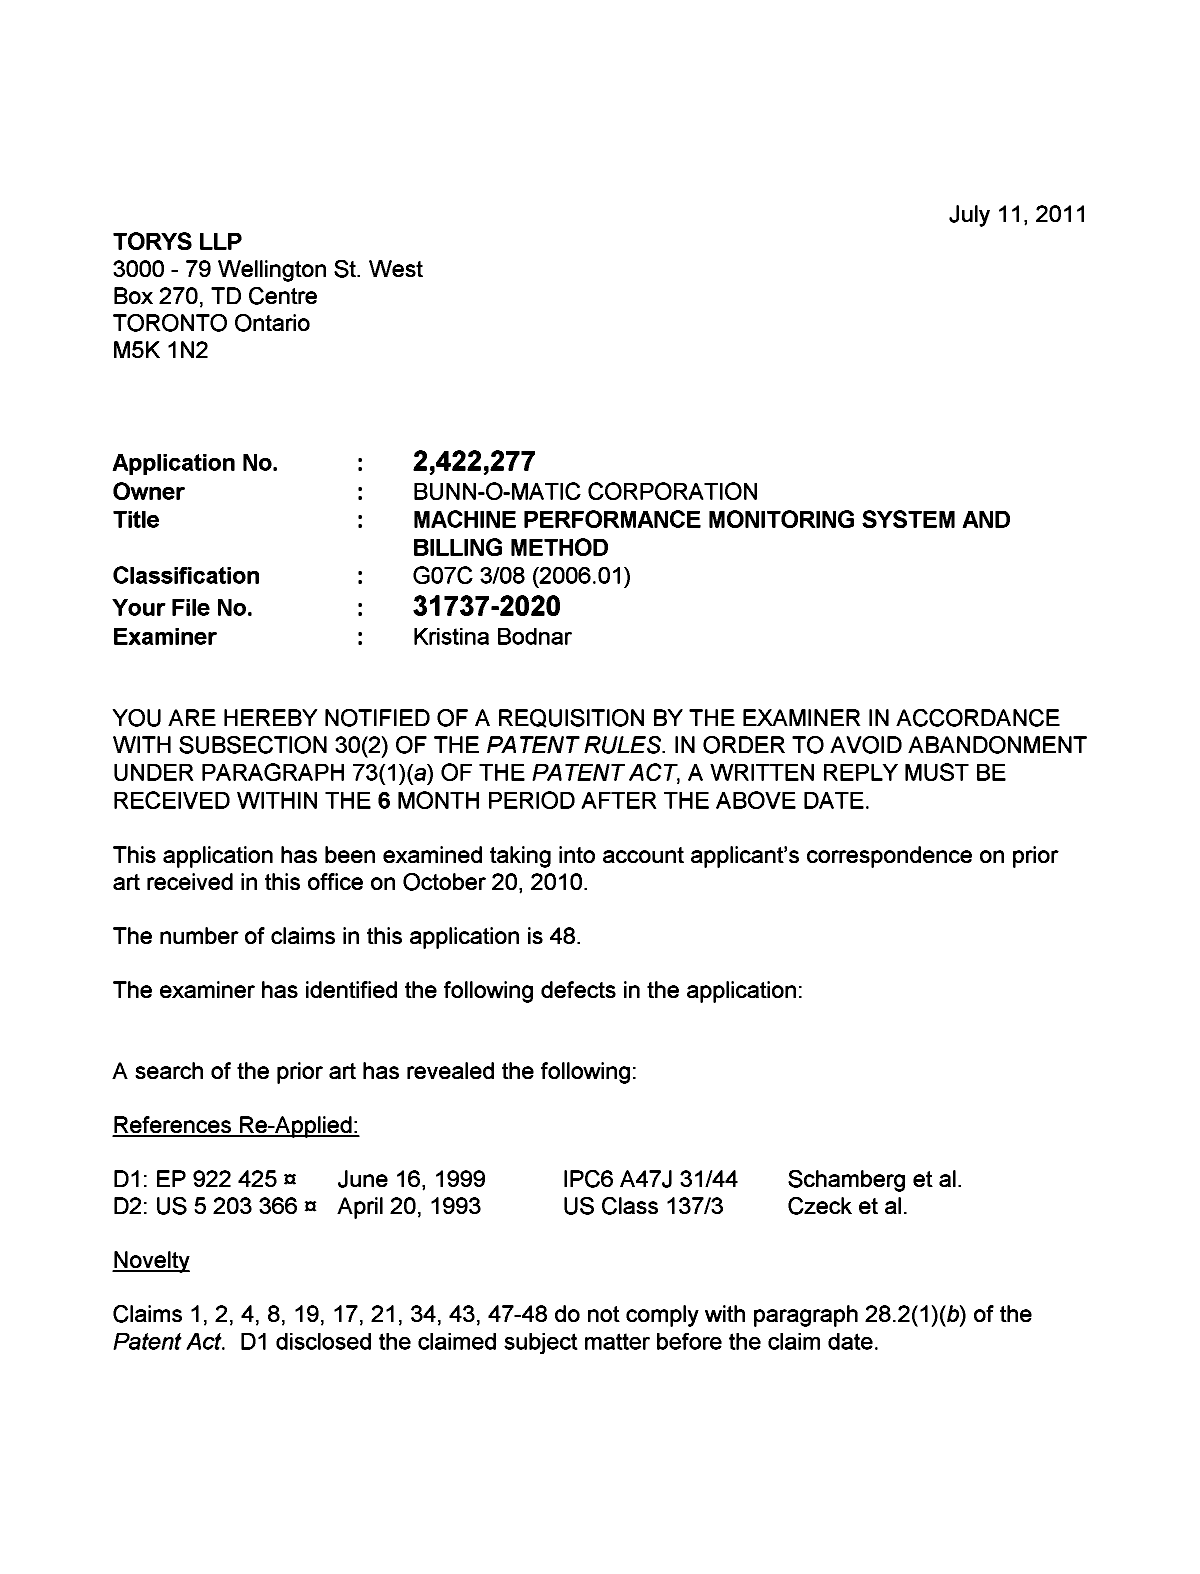 Document de brevet canadien 2422277. Poursuite-Amendment 20110711. Image 1 de 5